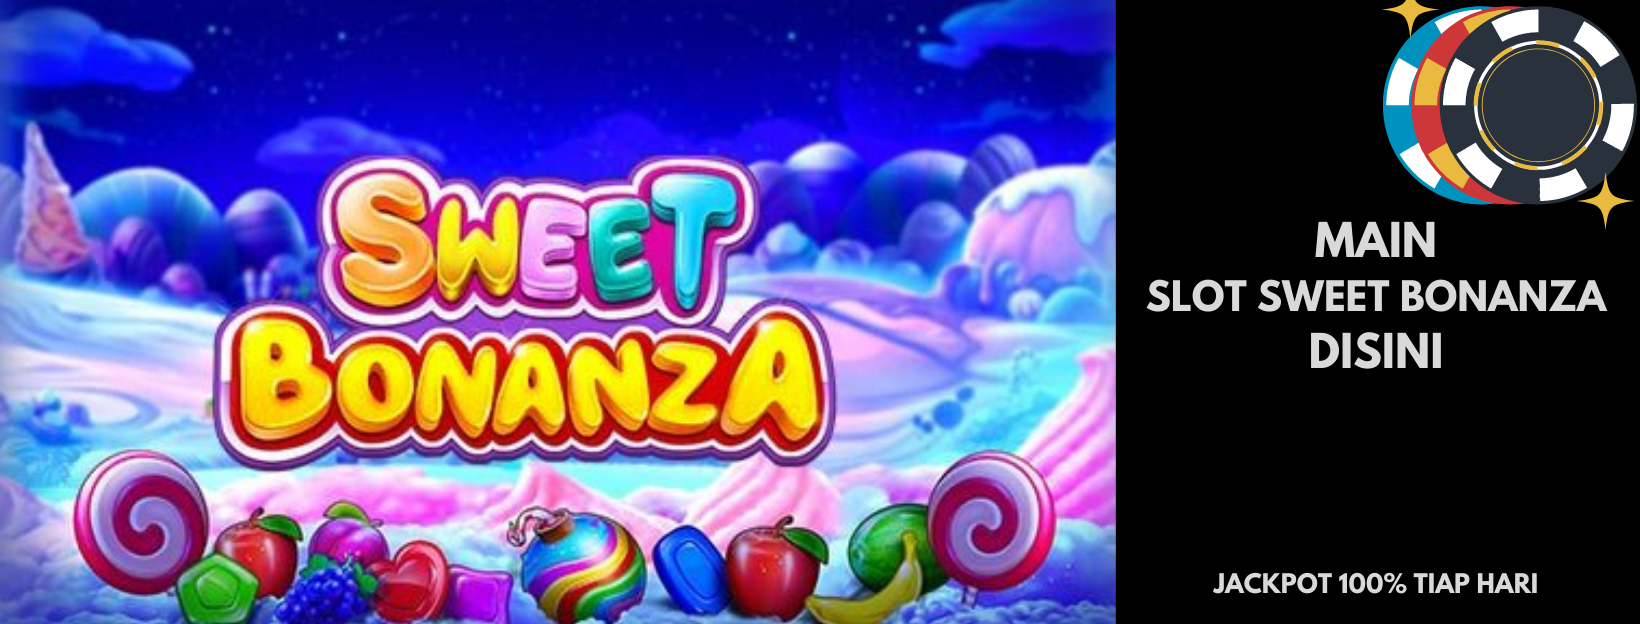 Keuntungan Fitur Free Spin Dalam Game Slot Bonanza